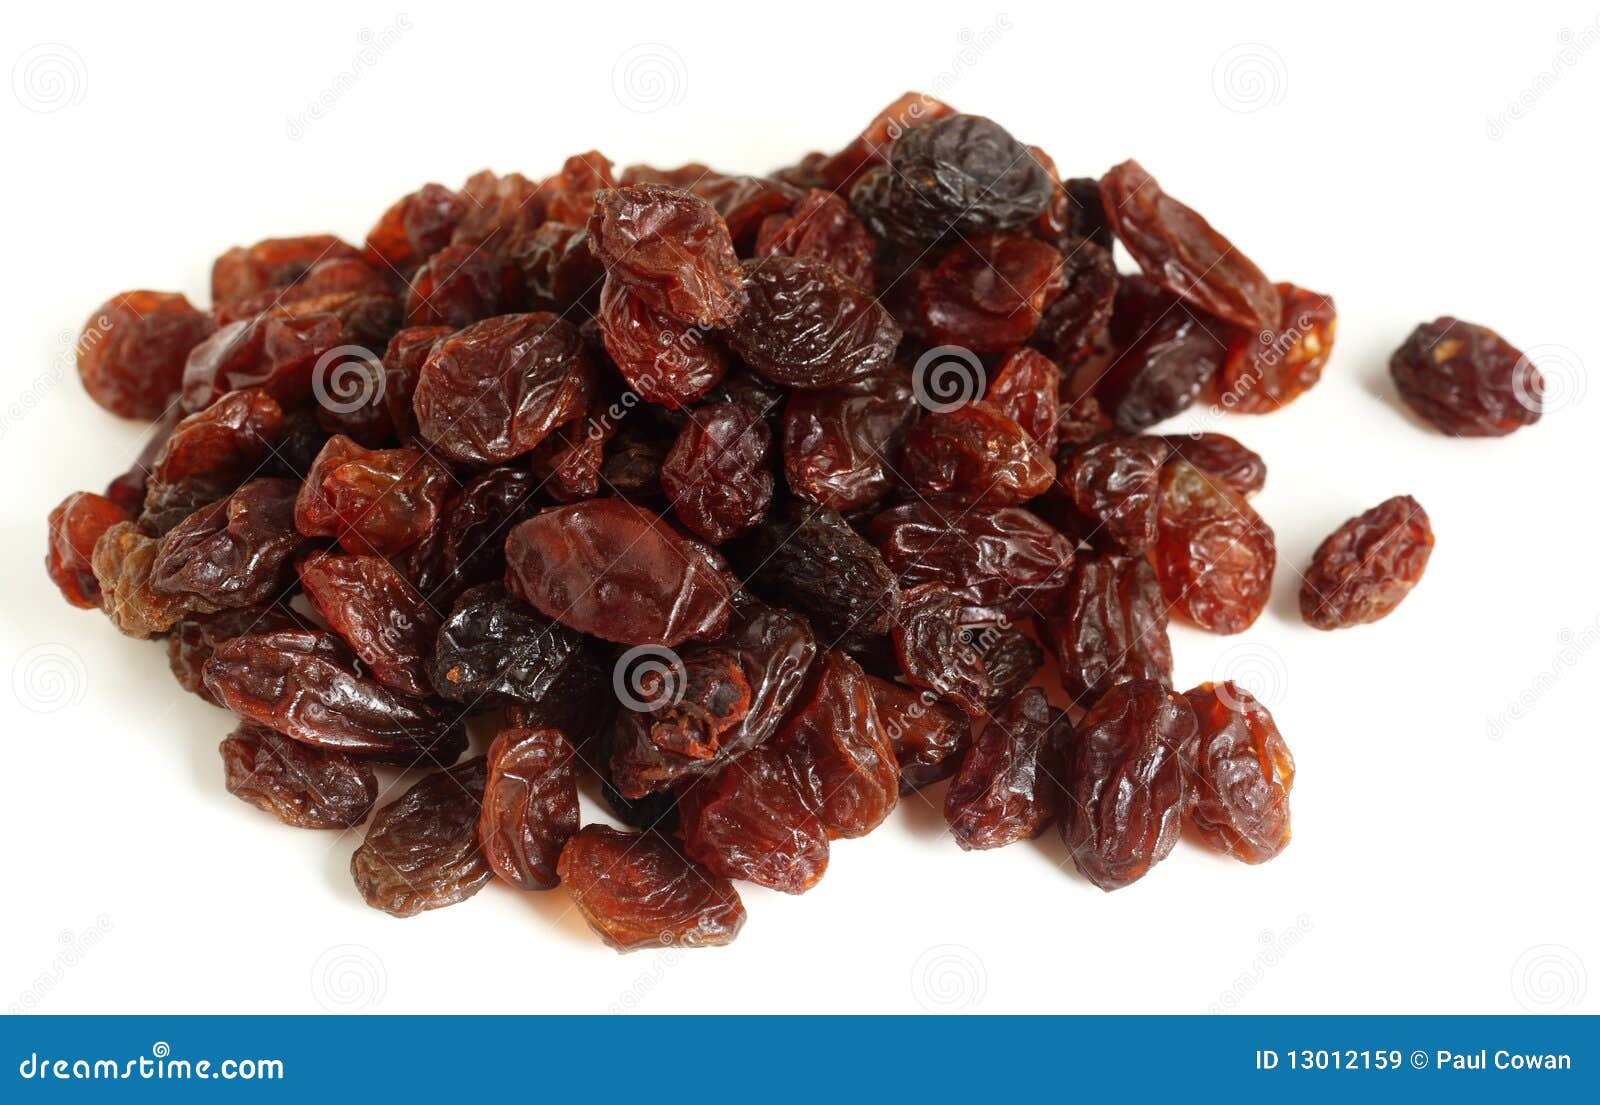 raisins over white